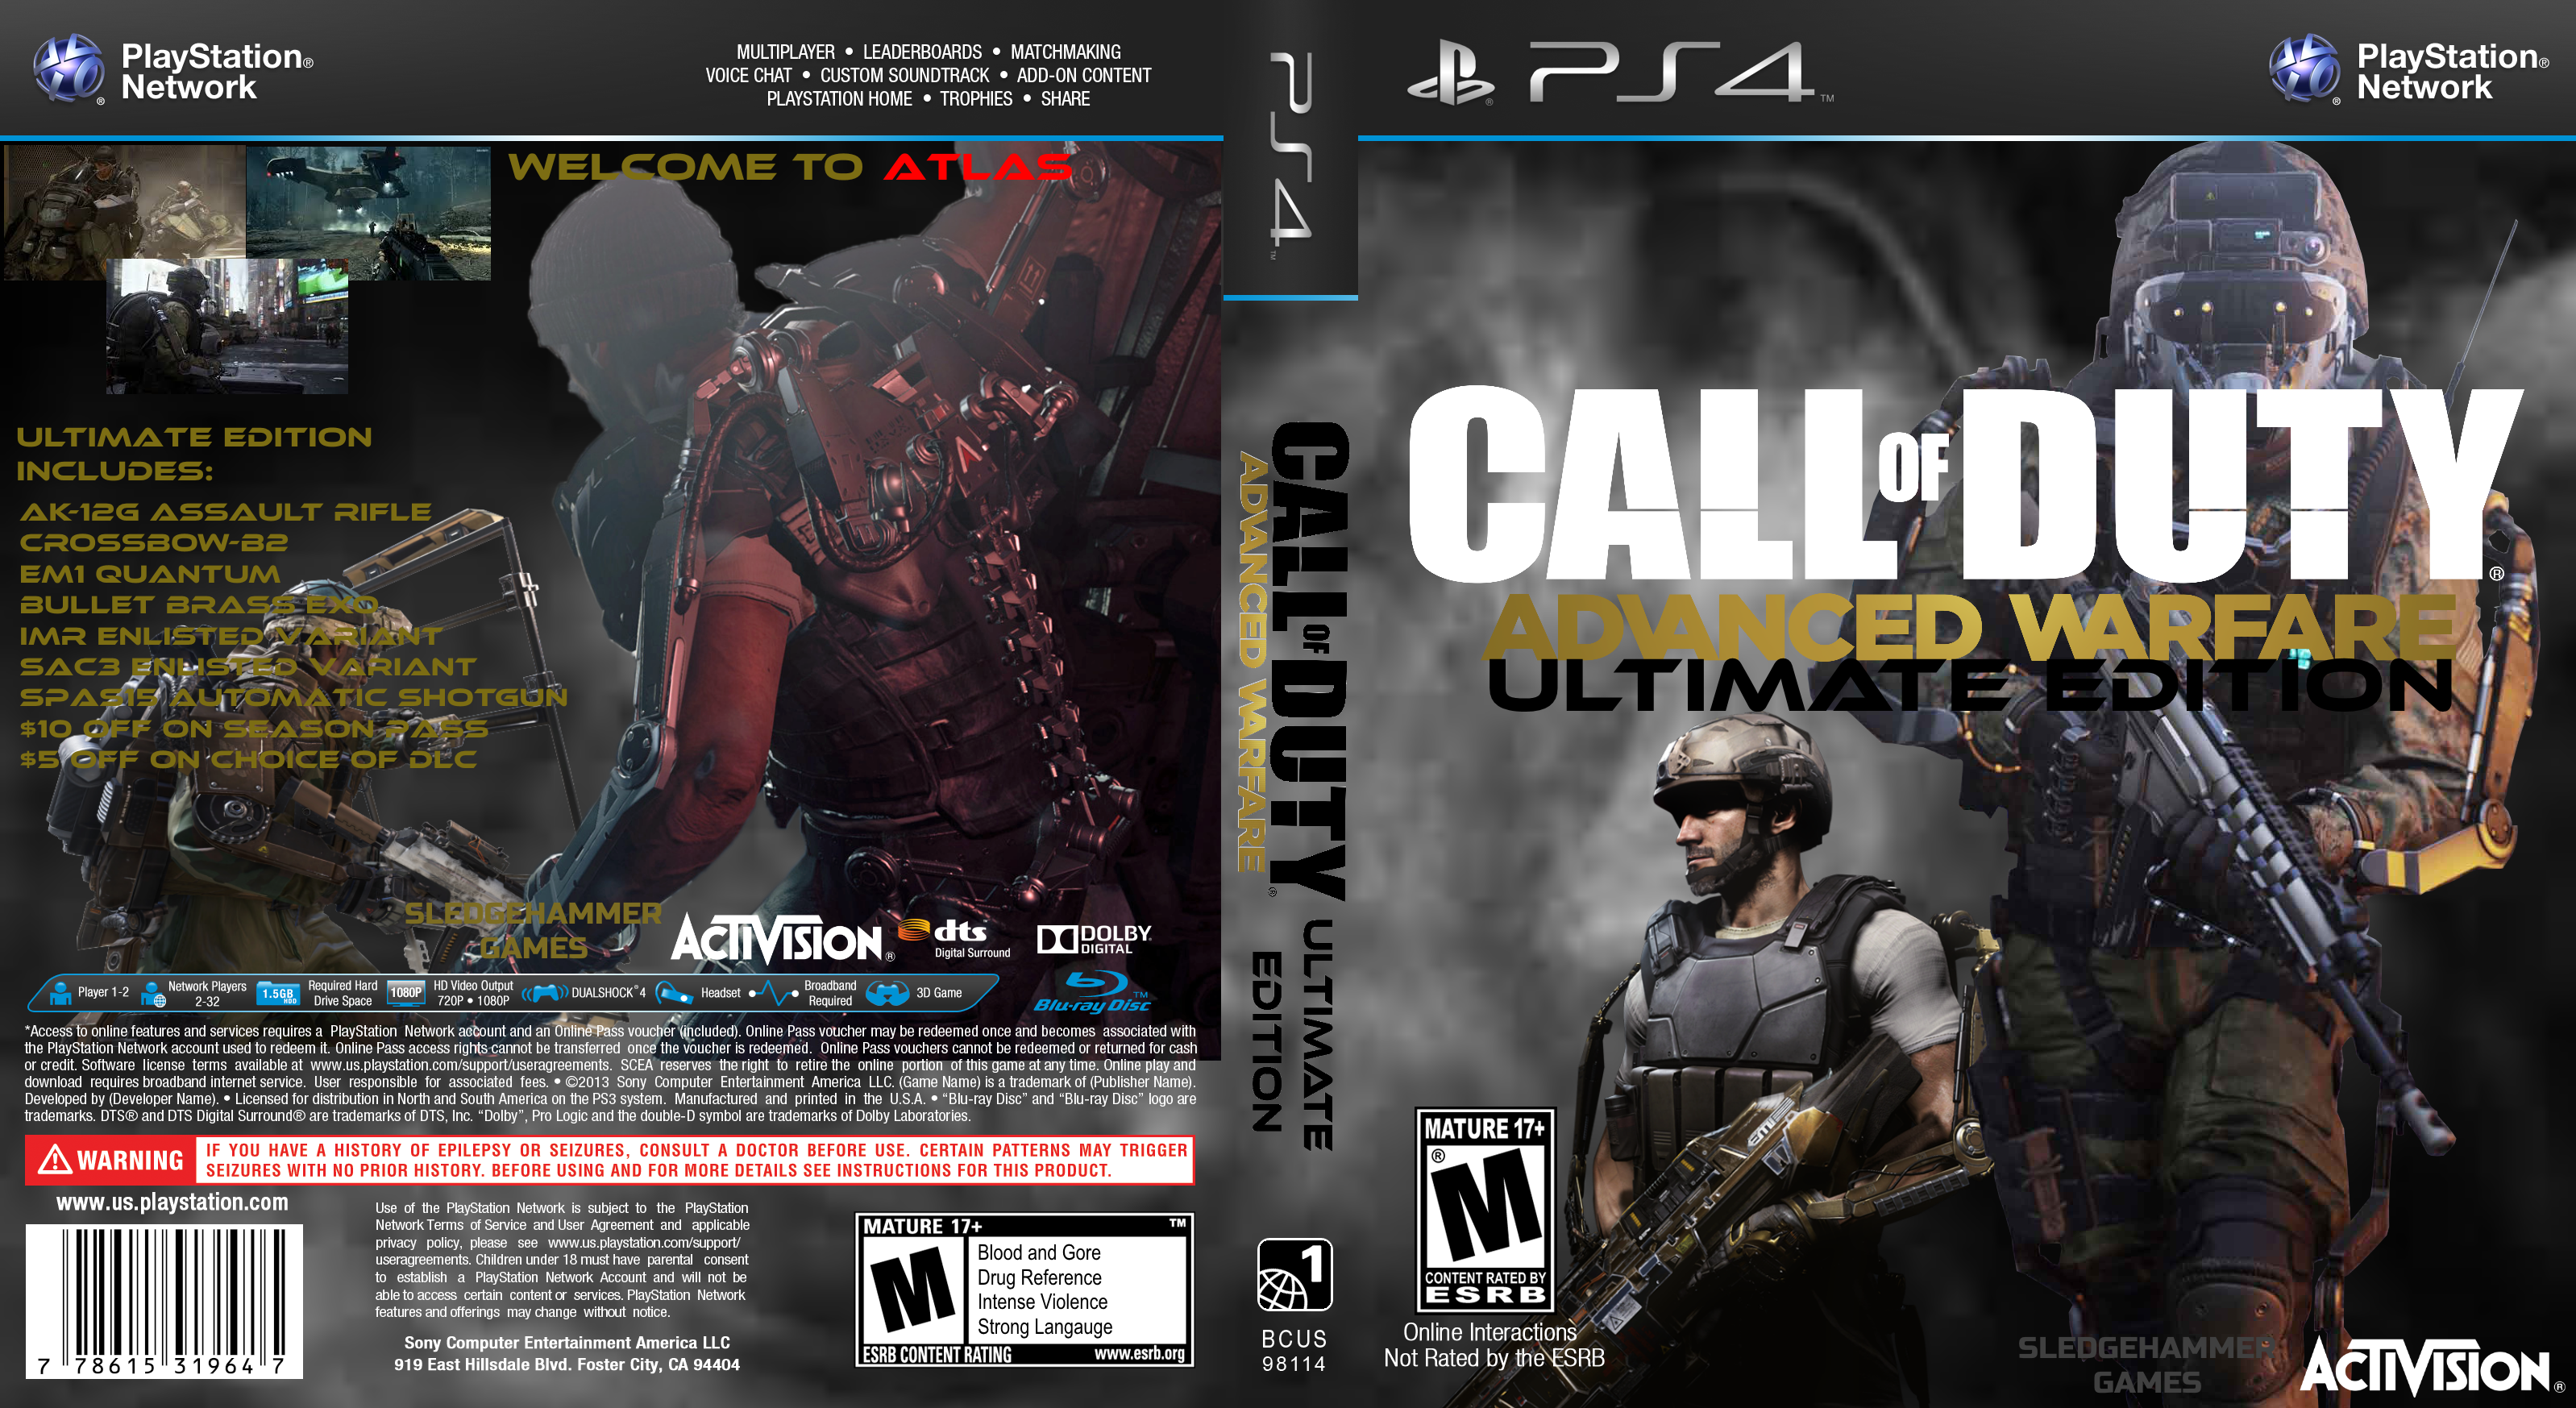 Call of Duty: Advanced Warfare UE box cover